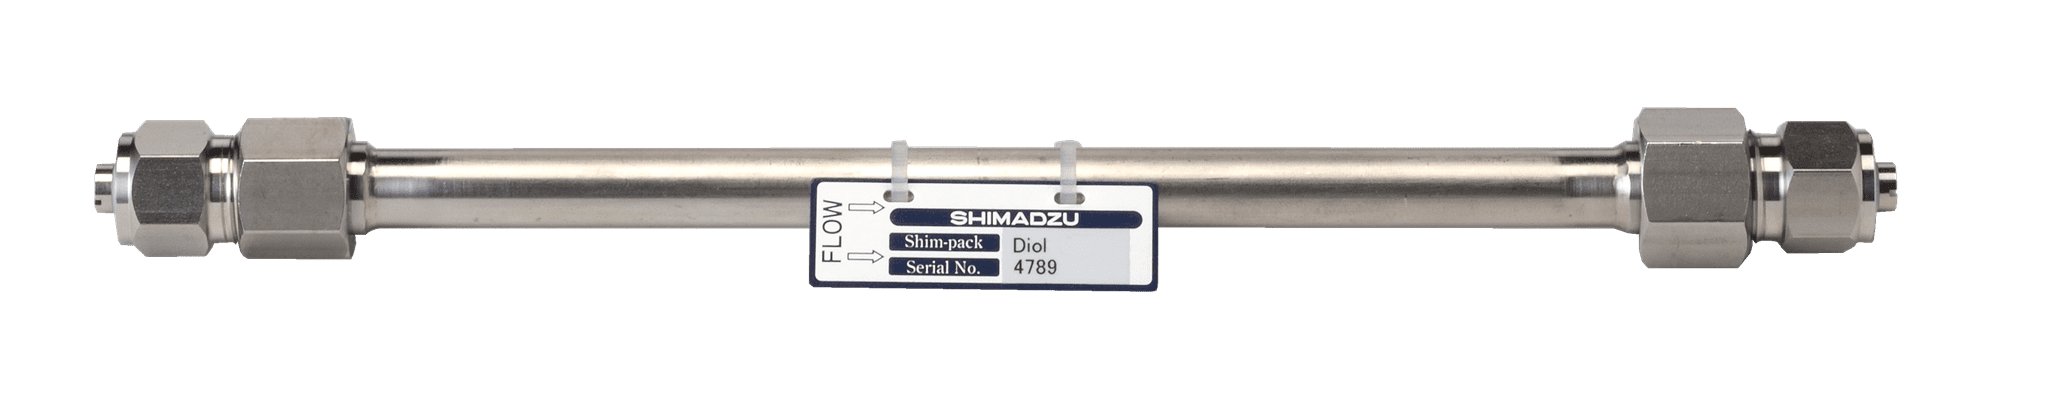 Afbeelding van Shim-pack Diol-300; 5 µm; 250 x 7.9